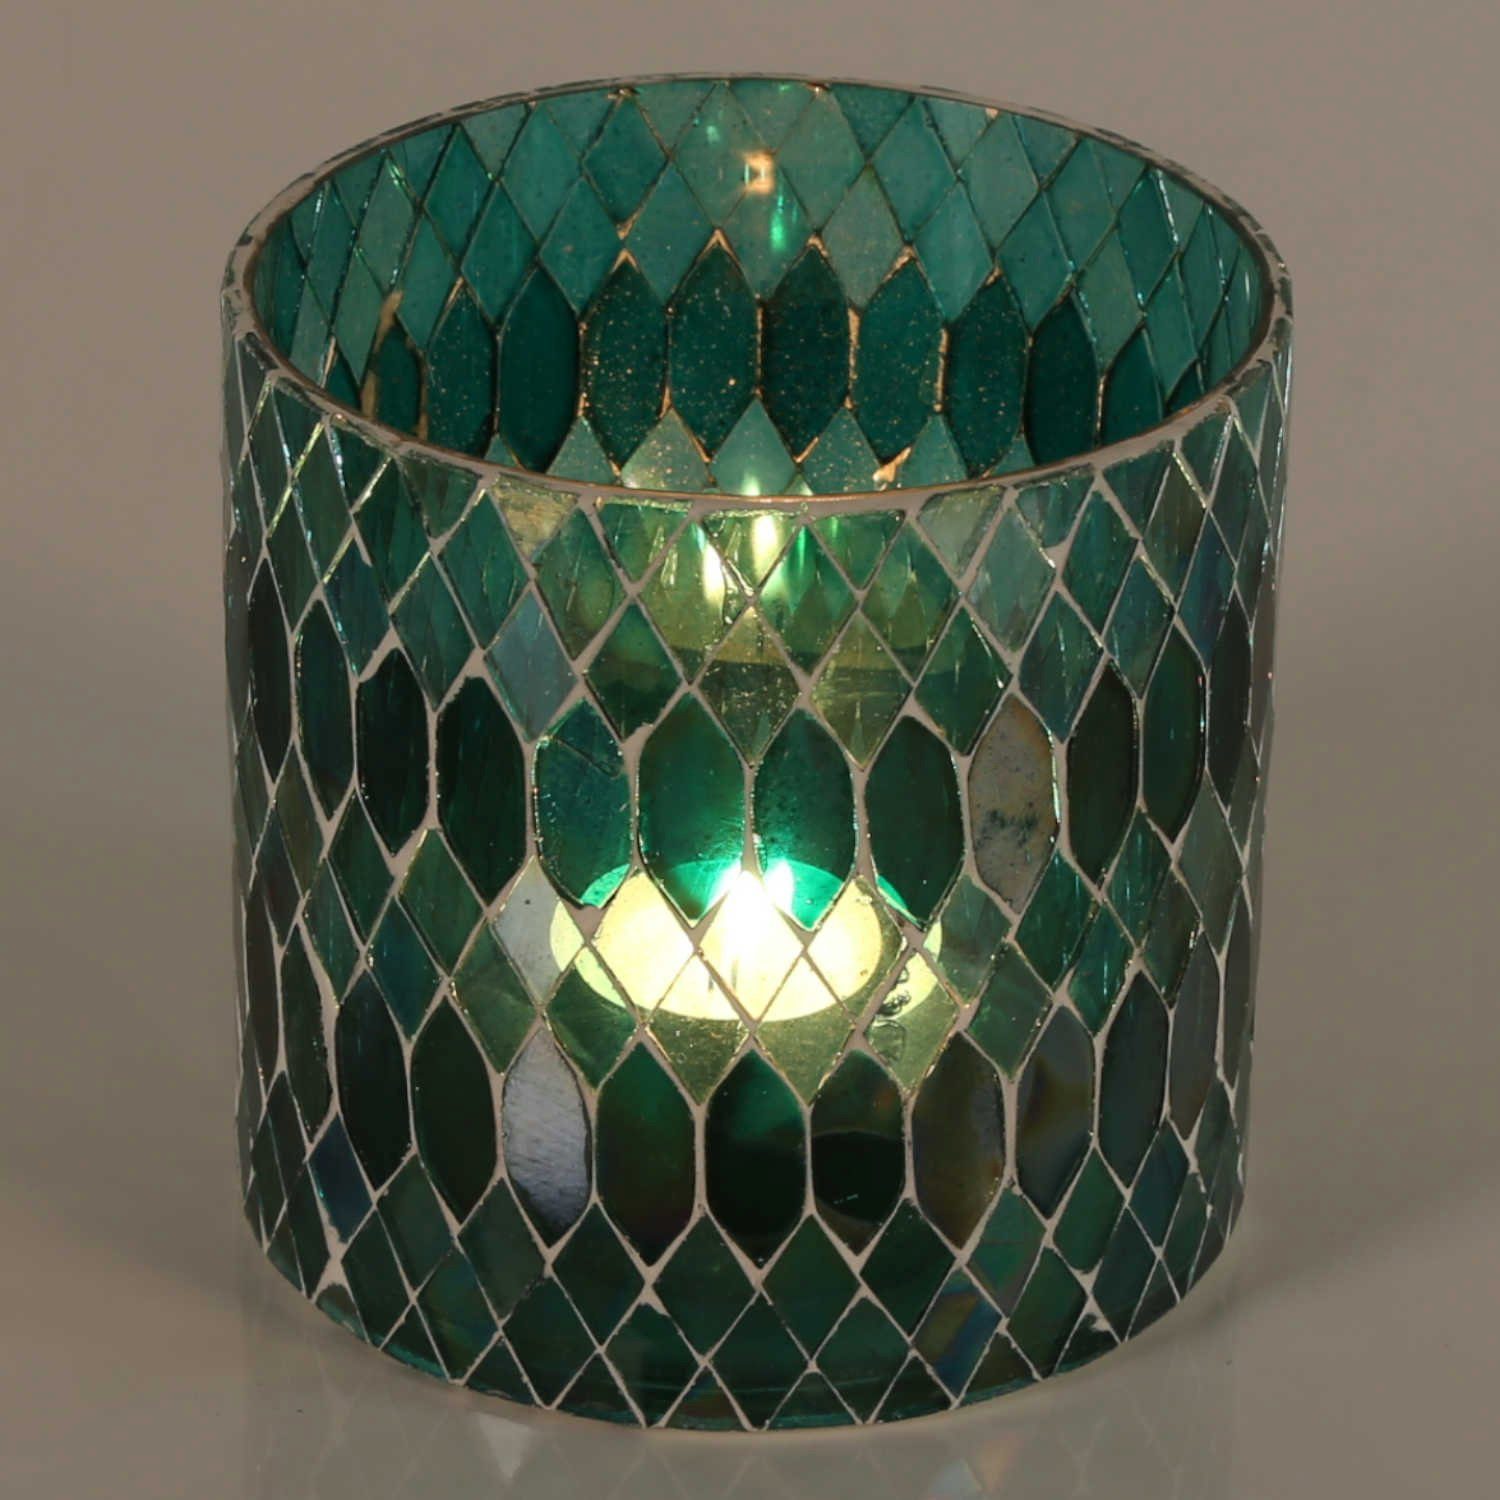 Casa Moro Windlicht Marokkanisches Mosaik Windlicht Rayan Grün aus Glas handgefertigt (Teelichthalter Boho Chic Kerzenständer Kerzenhalter, Glaswindlicht in den Größen S und M oder als 2er Set erhältlich), Ramadan Kerzenleuchter Dekoration